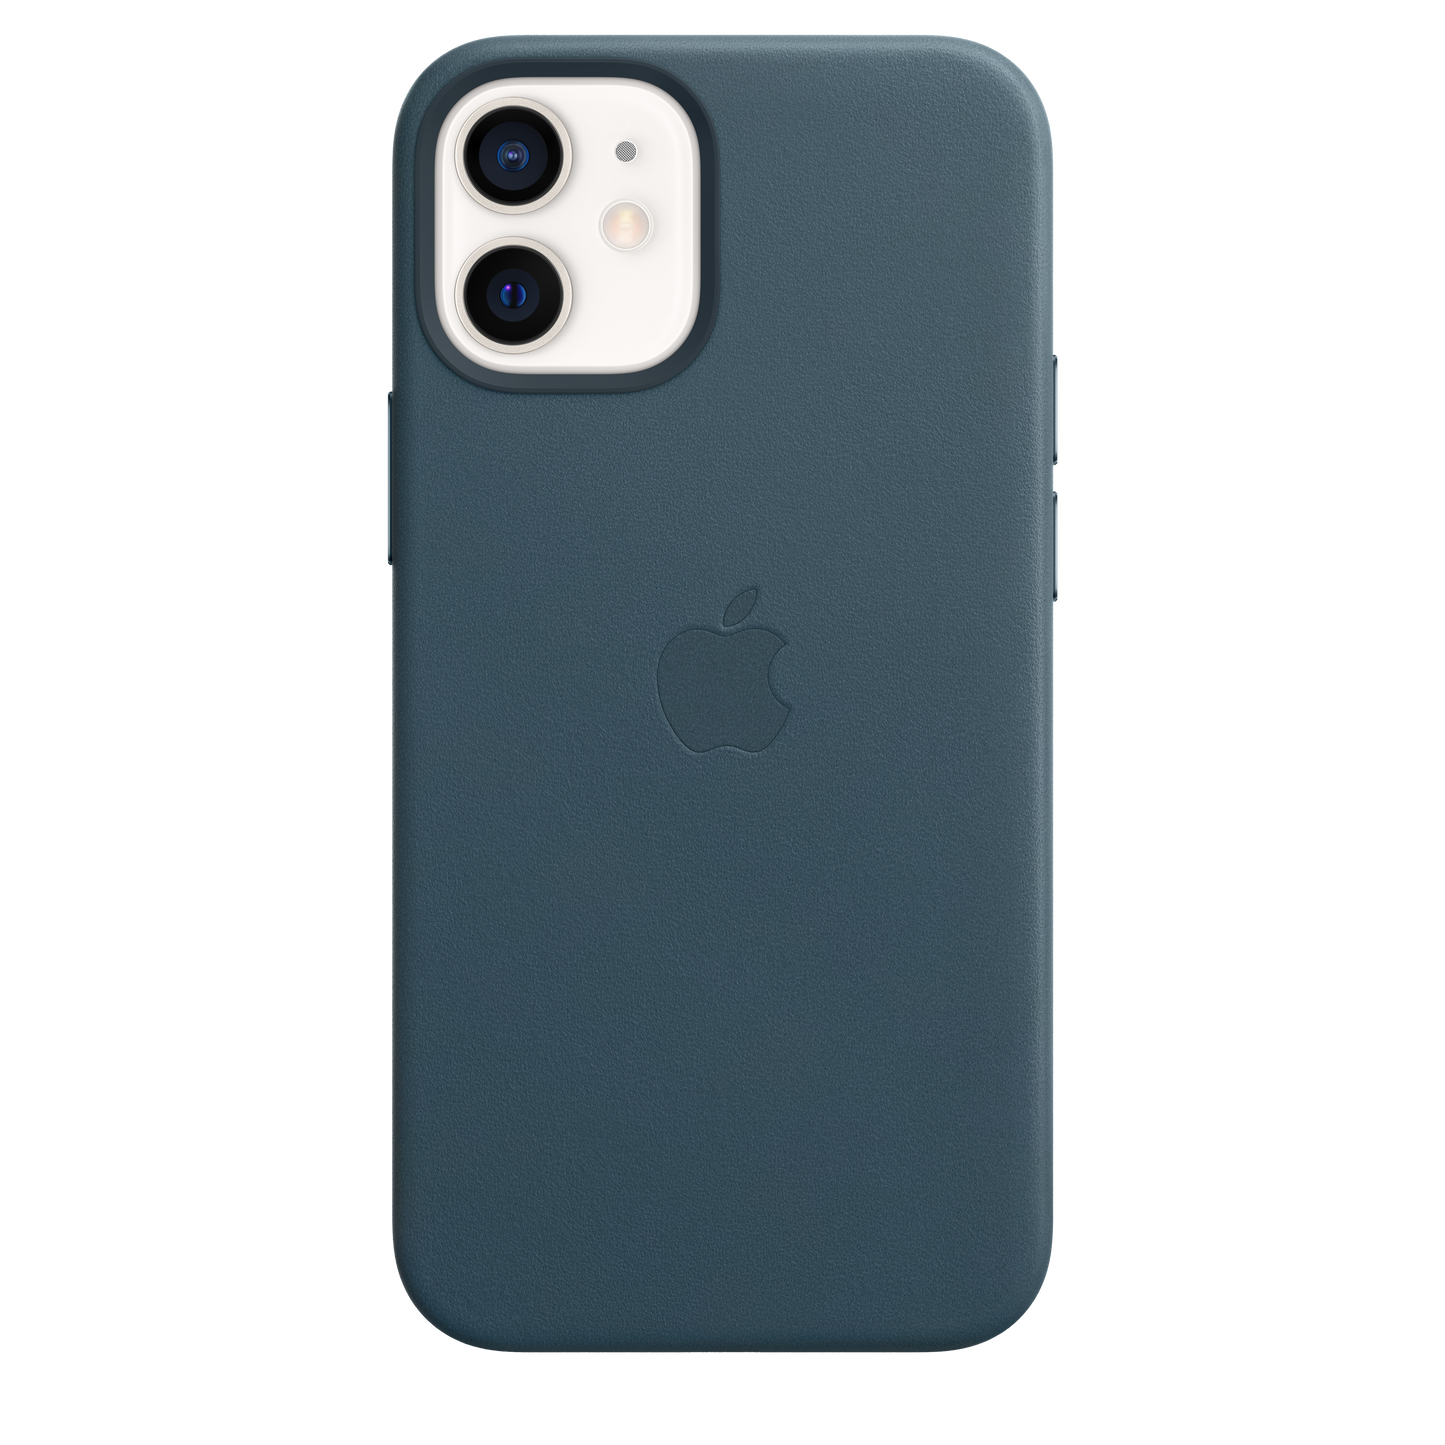 Funda de piel con MagSafe para el iPhone12 mini, Azul báltico - Rossellimac